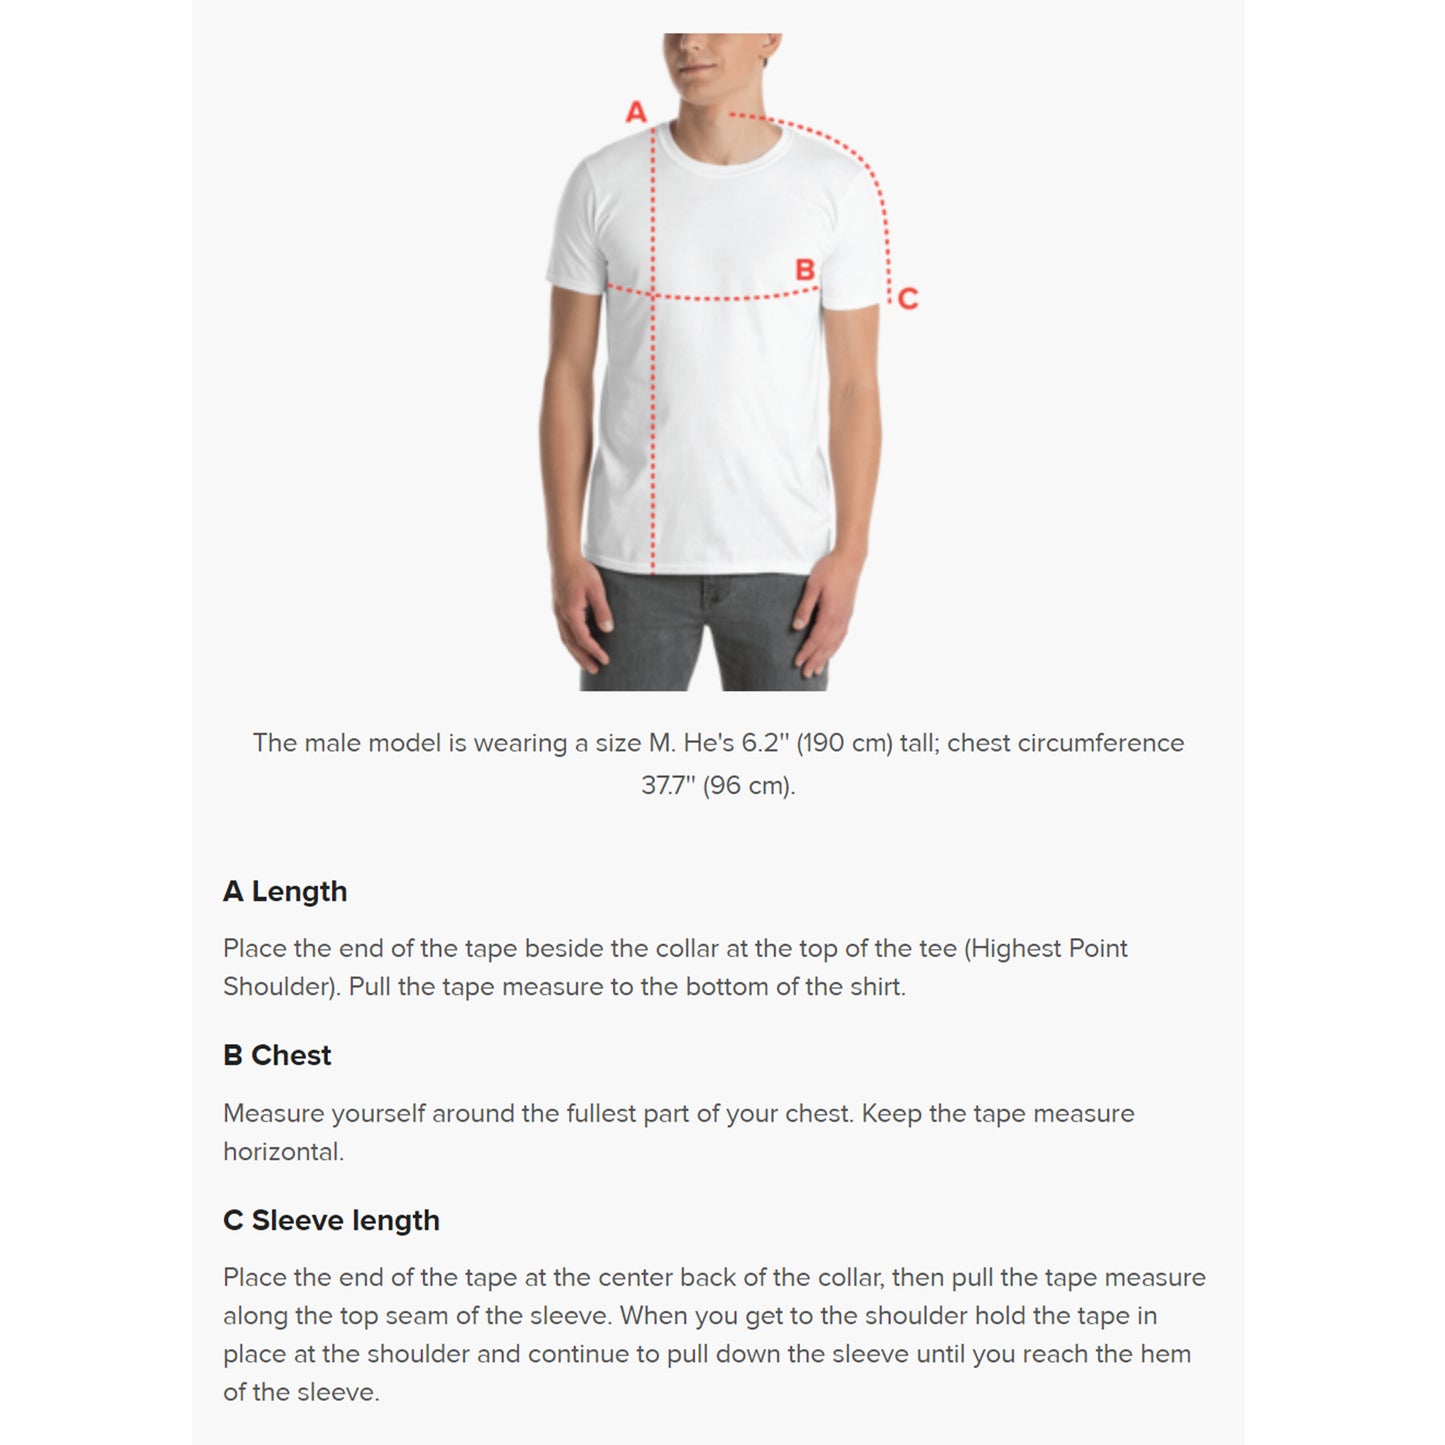 Unisex body measurement guide for unisex SPARS Logomark Basic T-shirt